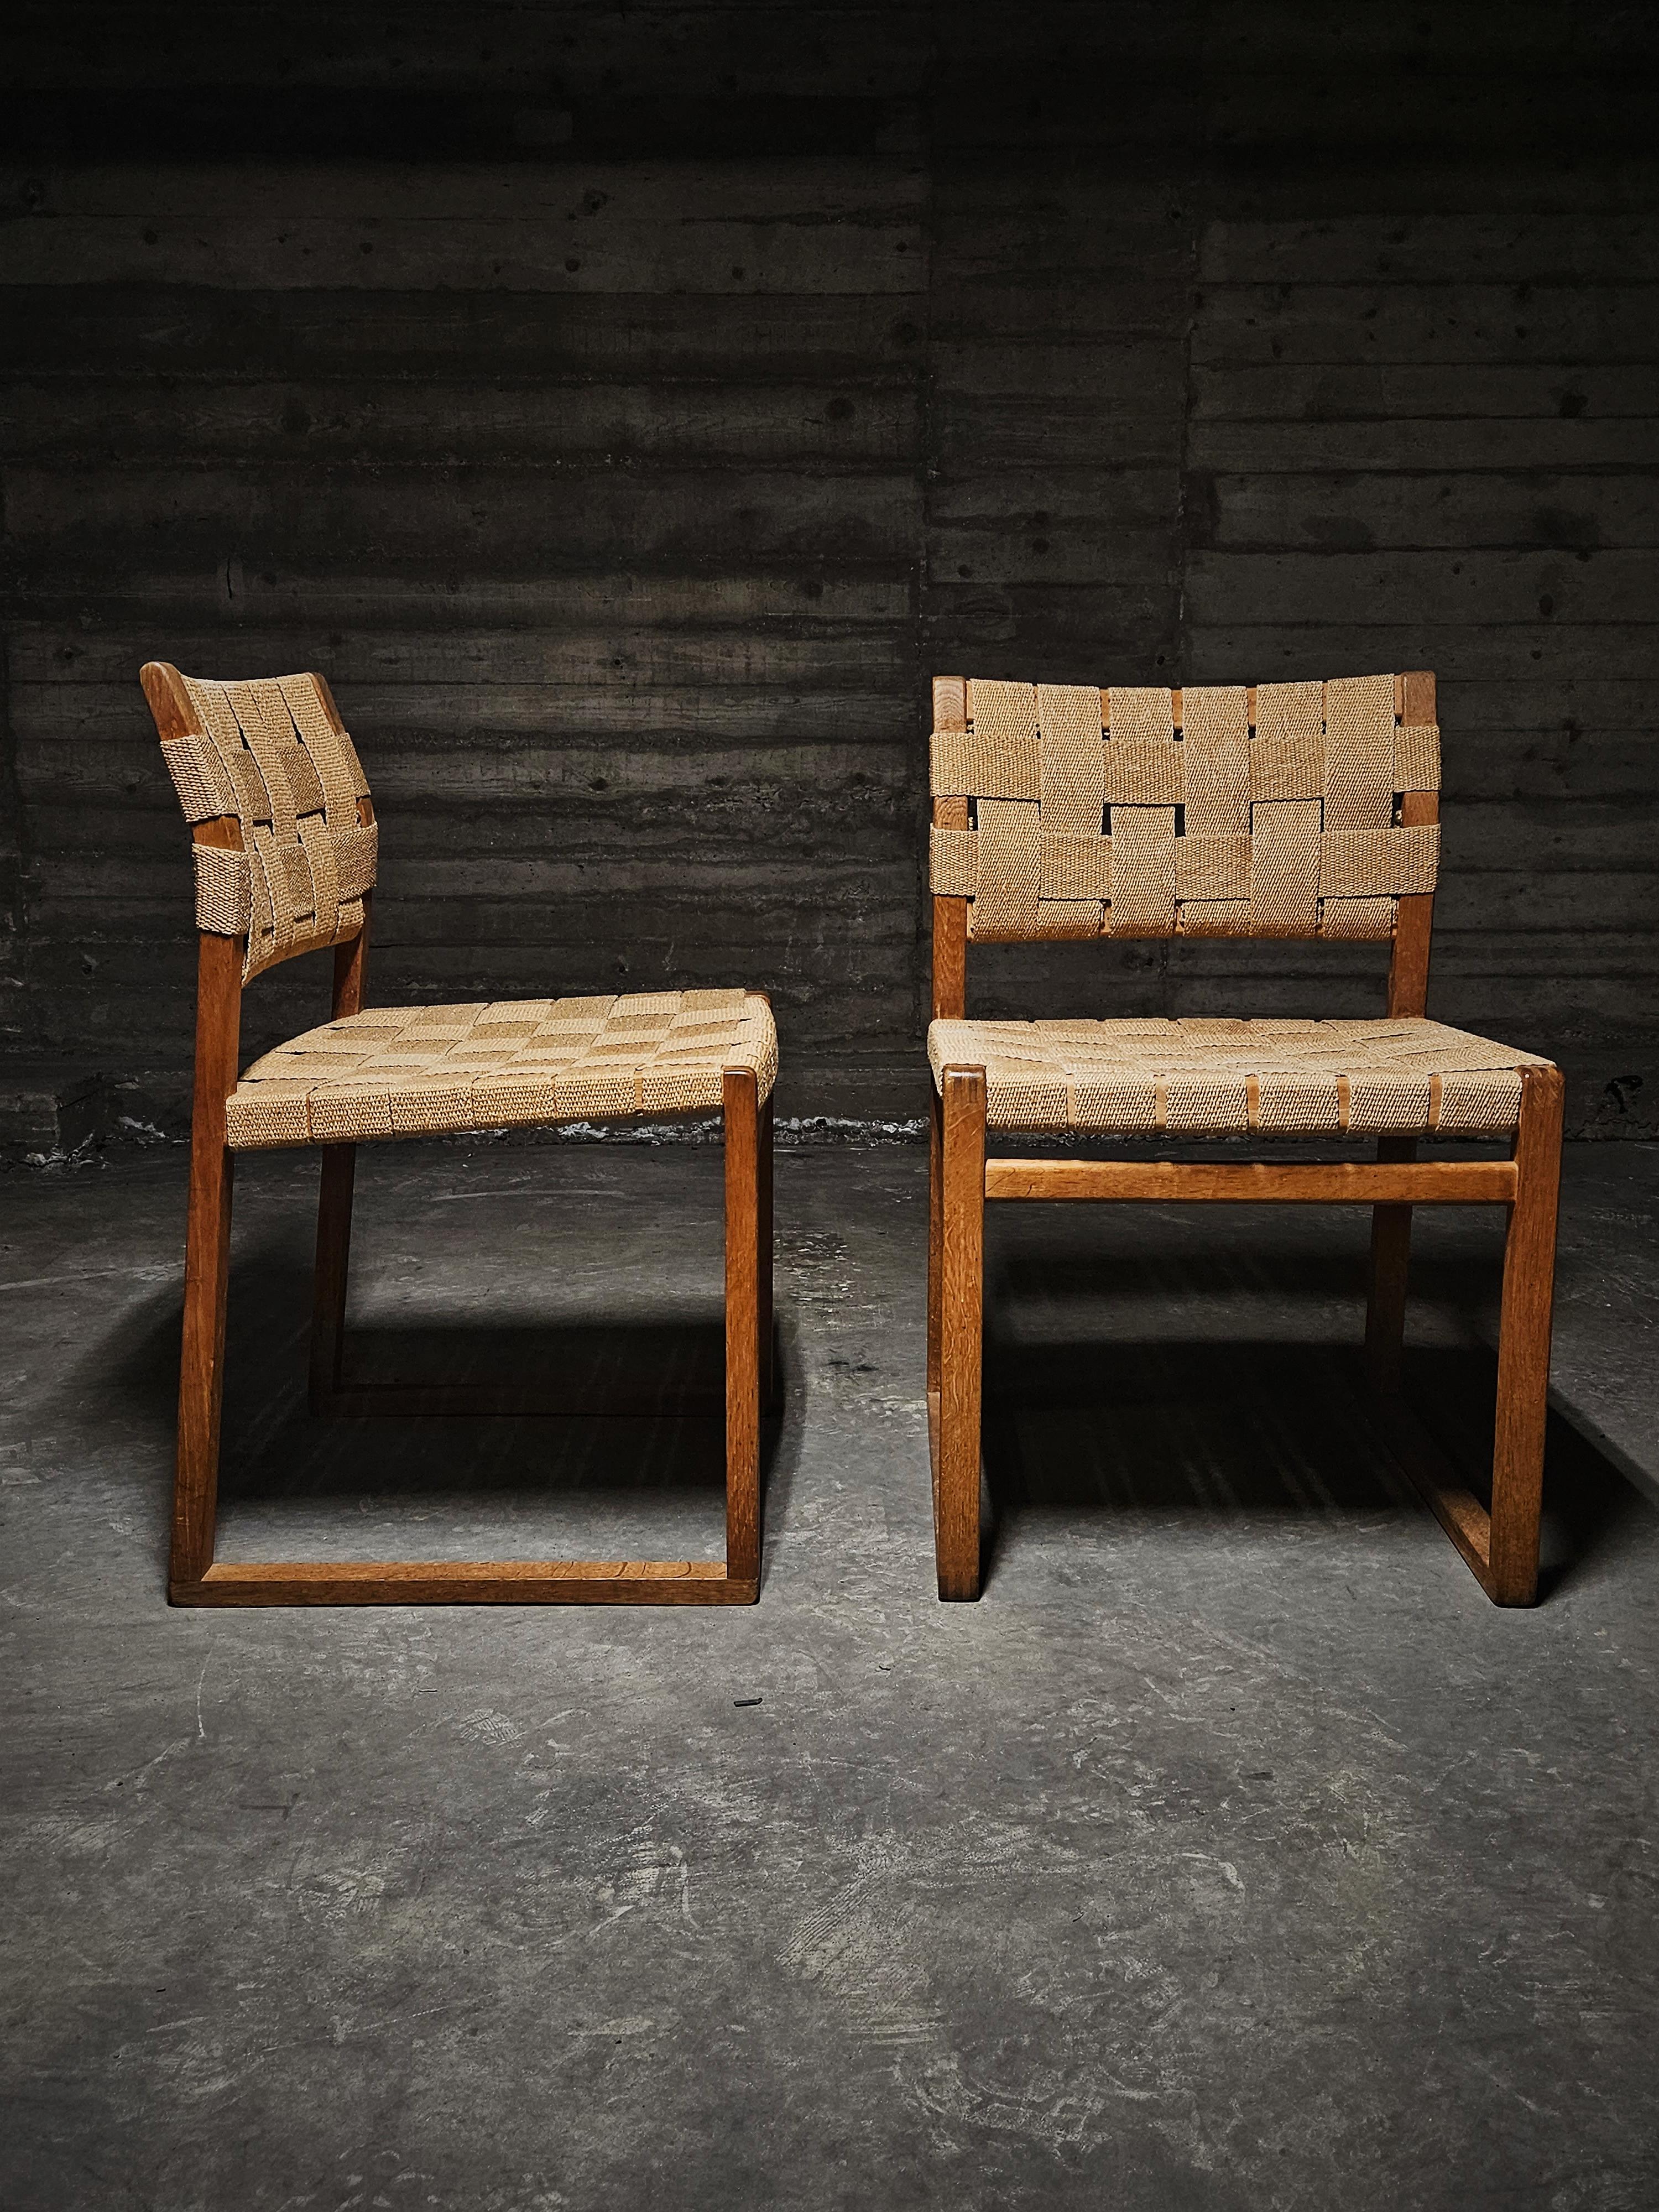 Børge Mogensen für Fredericia, Esszimmerstühle Modell 'BM 61', Eiche, Dänemark, 1950er Jahre

Dieser naturalistisch anmutende Stuhl zeichnet sich durch ein prächtiges Design mit einfachen Formen und authentischen Materialien aus. Der Rahmen besteht